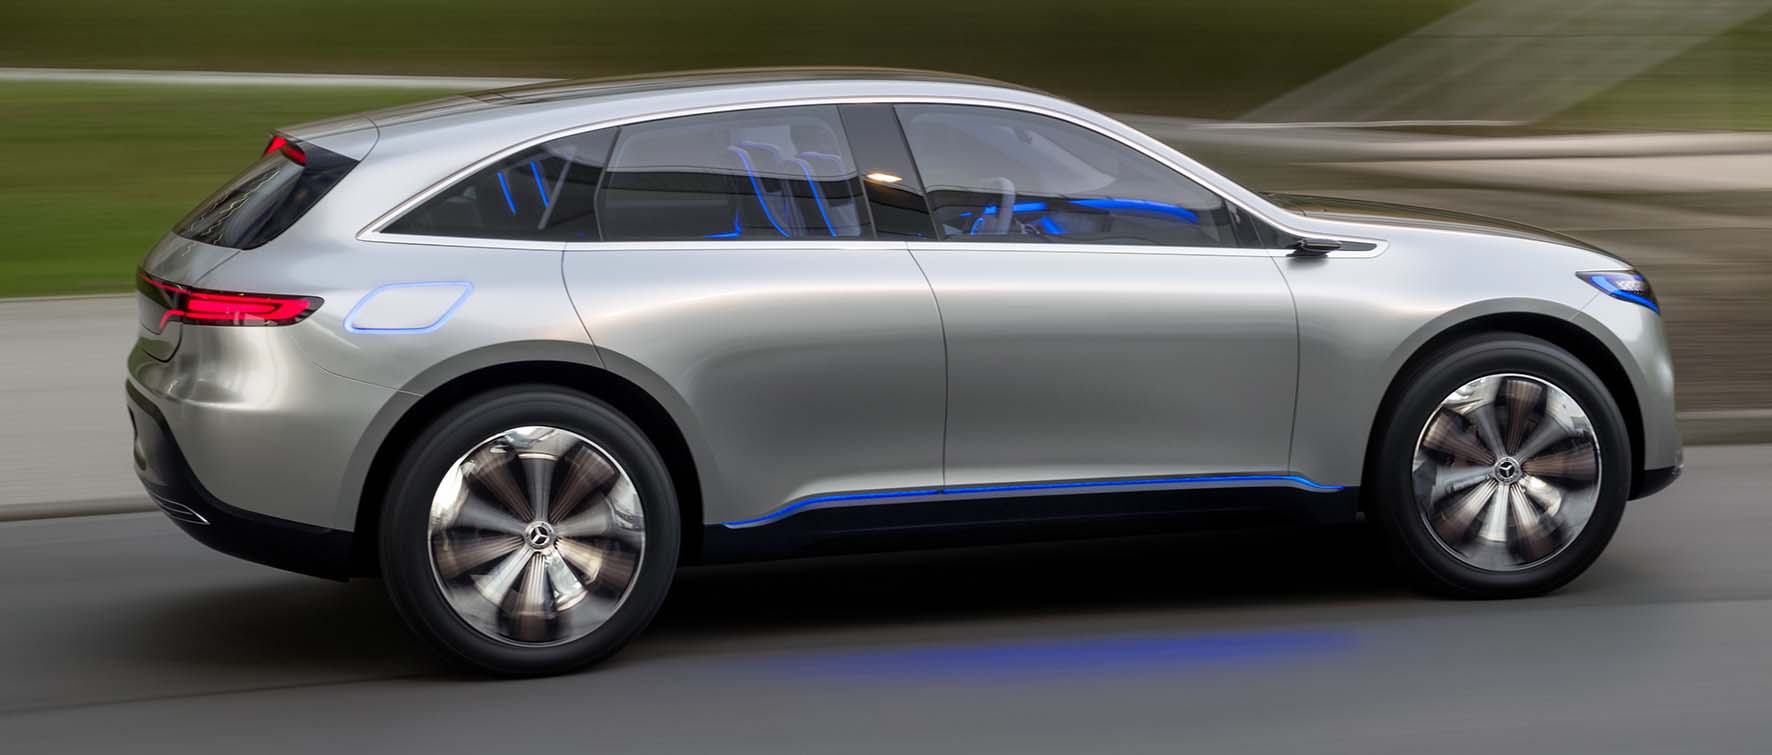 Mercedes prototipo suv elettrico Generation EQ lat